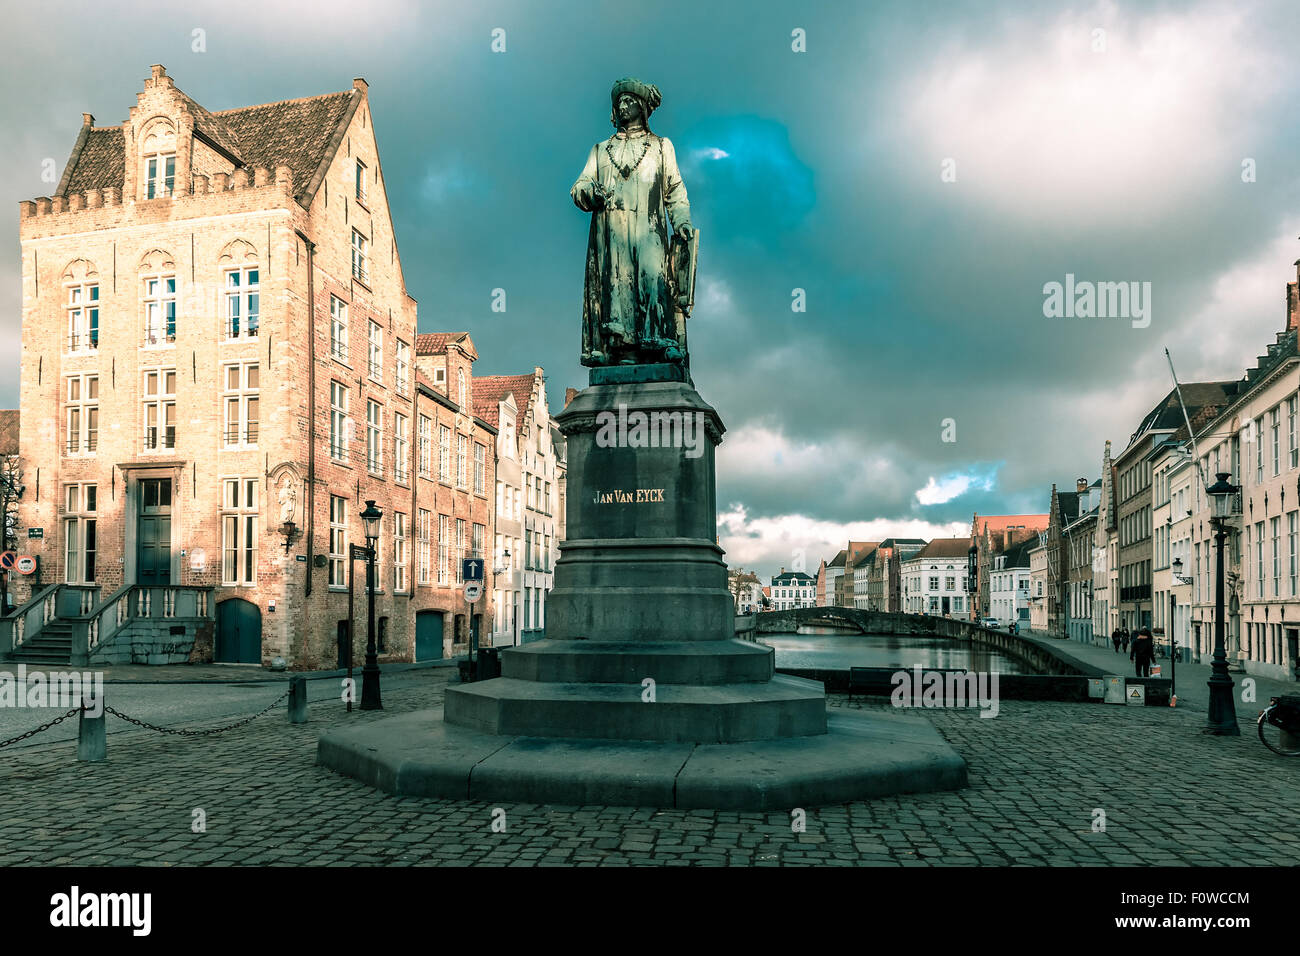 Jan Van Eyck Square and Spiegel in Bruges, Belgium Stock Photo